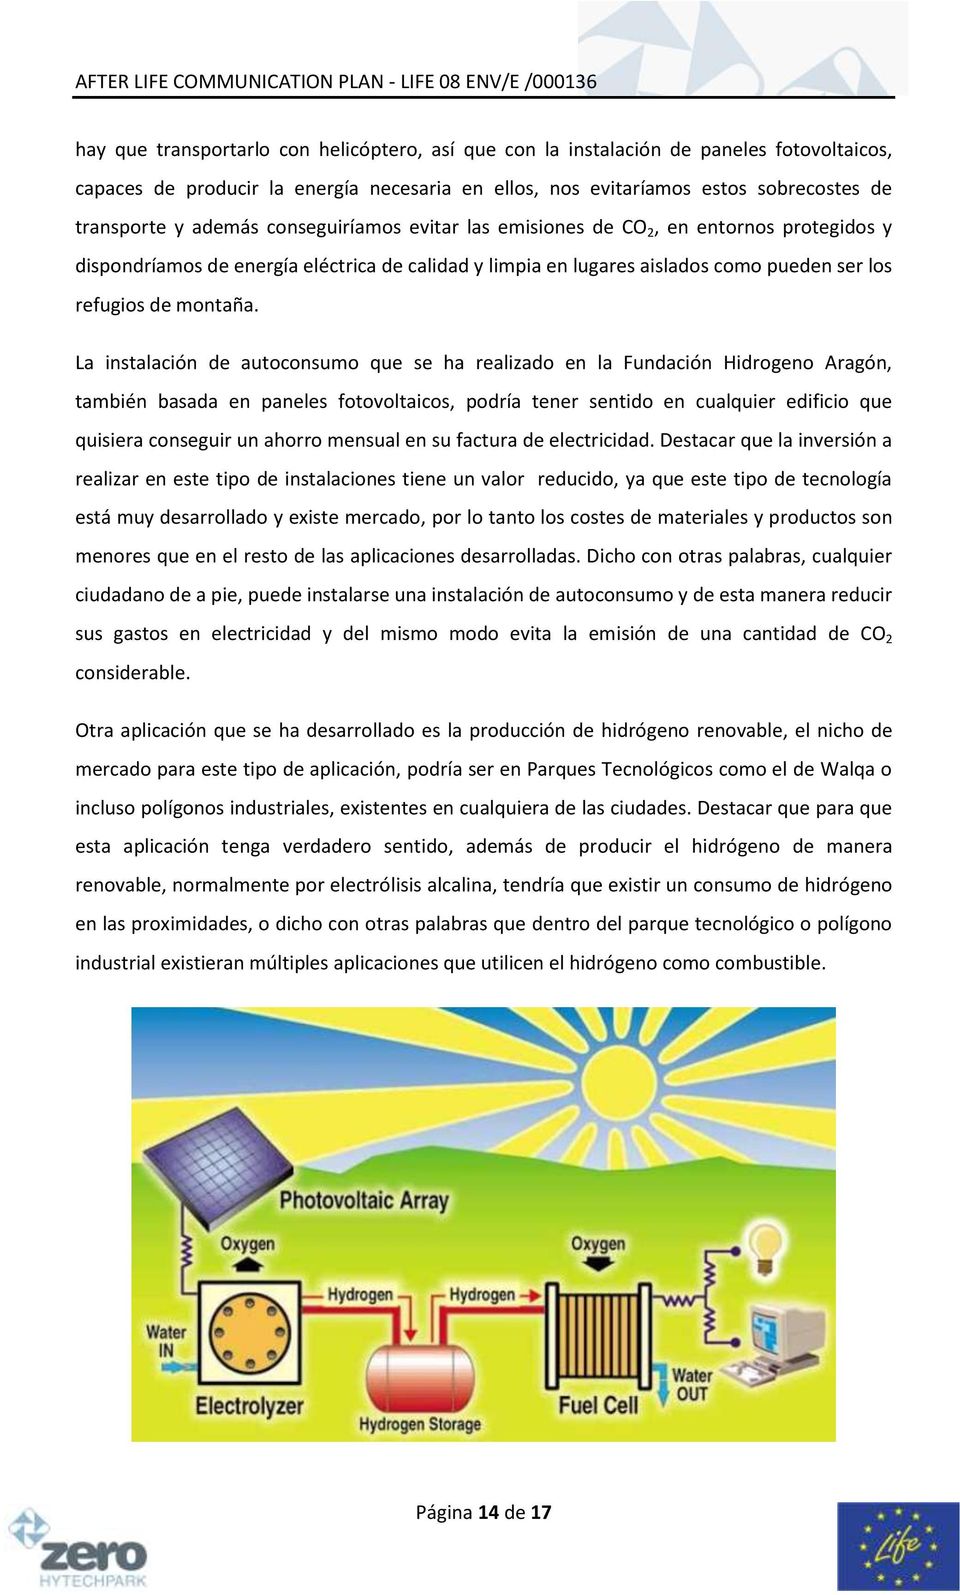 La instalación de autoconsumo que se ha realizado en la Fundación Hidrogeno Aragón, también basada en paneles fotovoltaicos, podría tener sentido en cualquier edificio que quisiera conseguir un